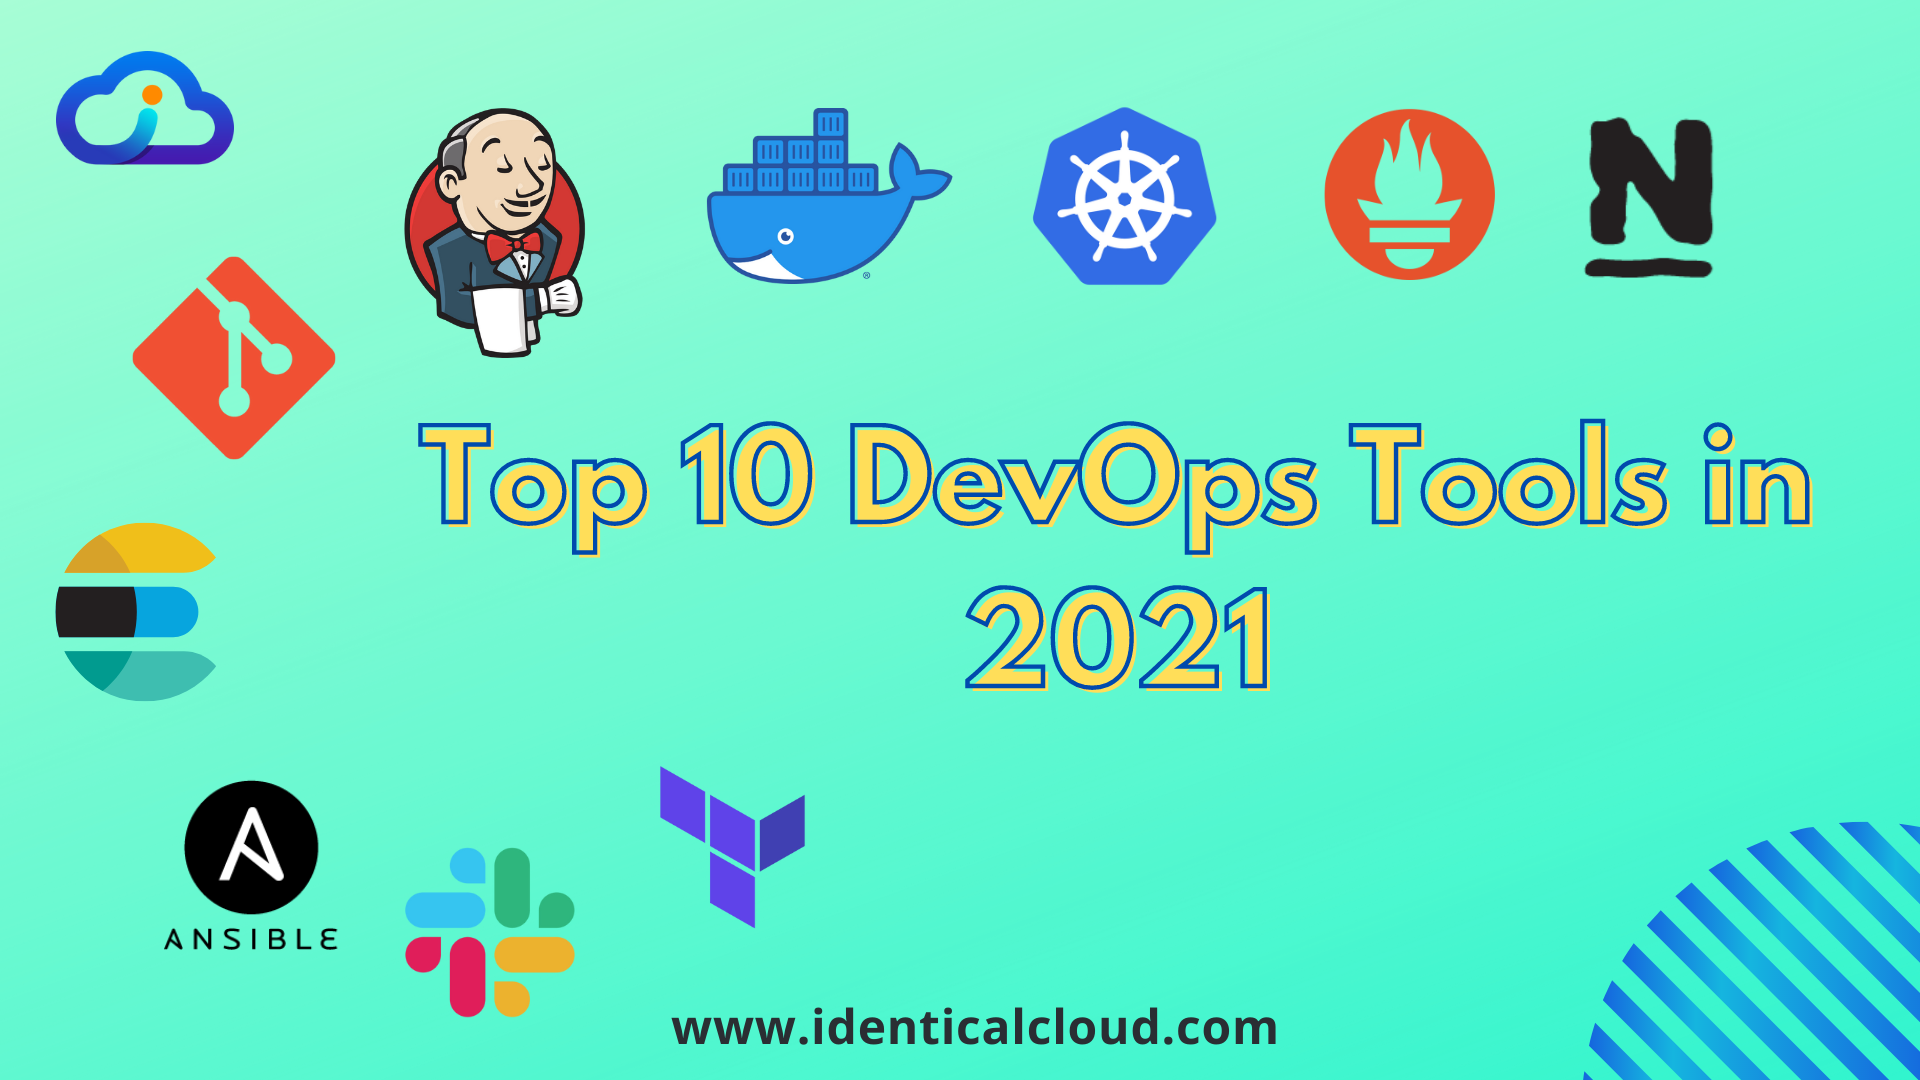 Top 10 DevOps tools in 2021